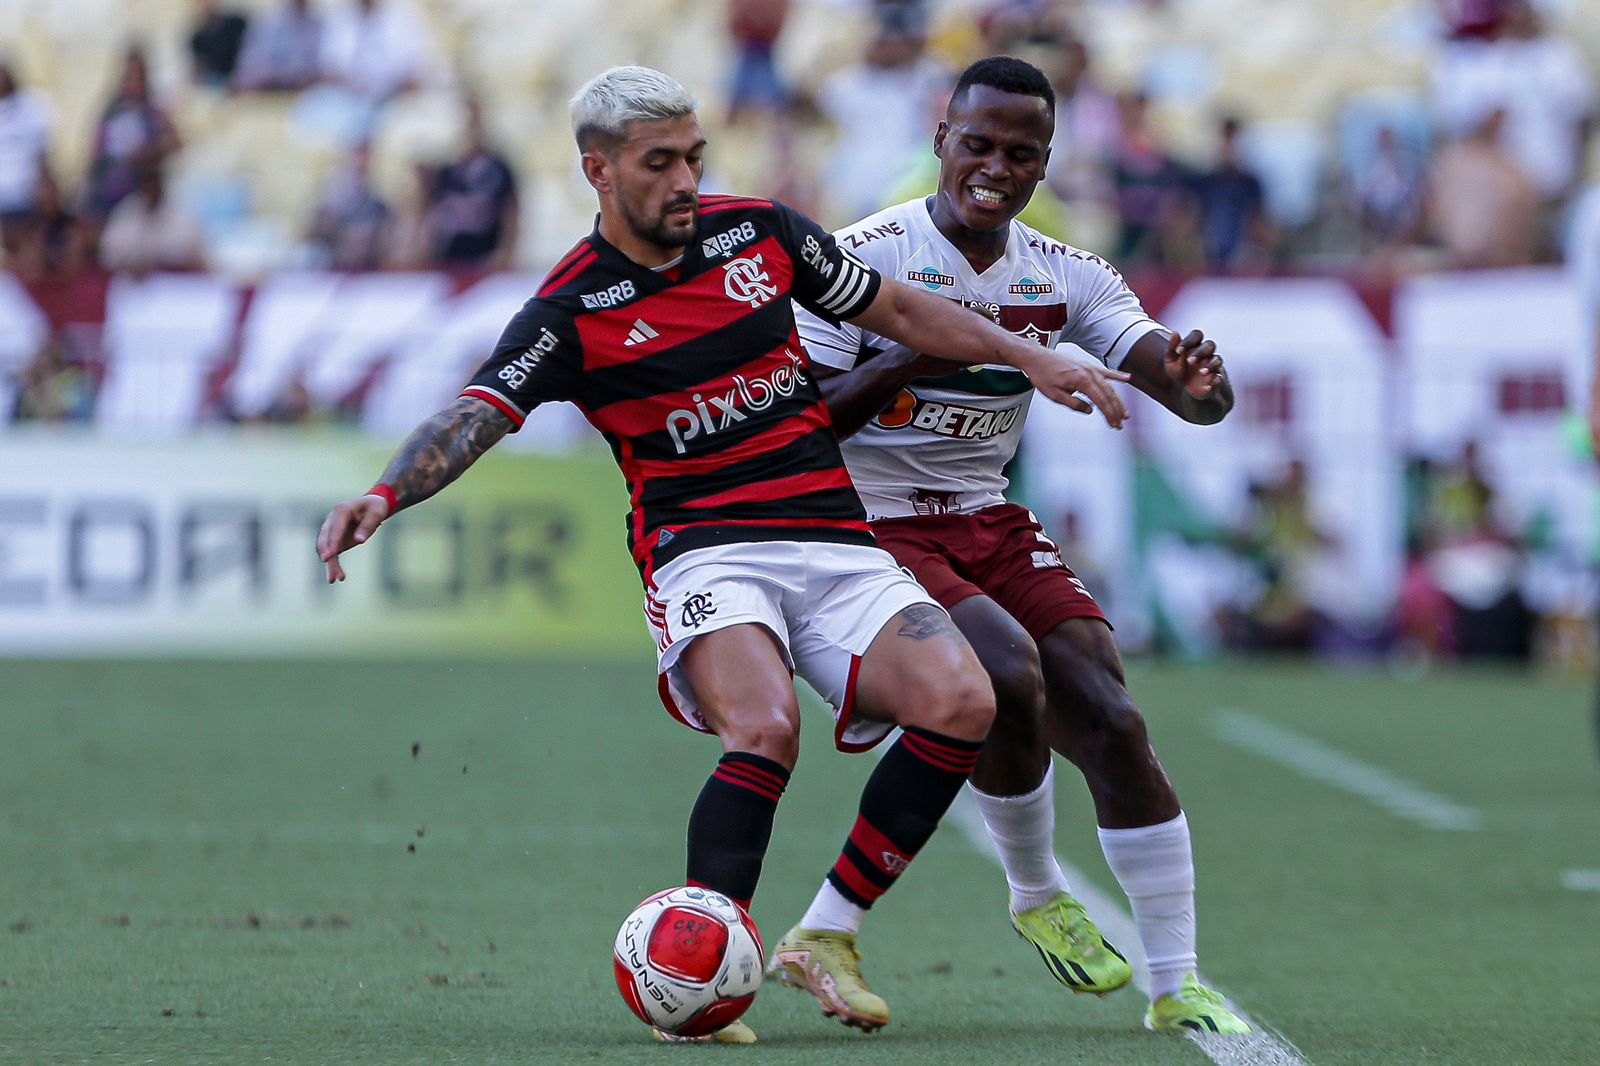 Foto: Lucas Merçon/Fluminense